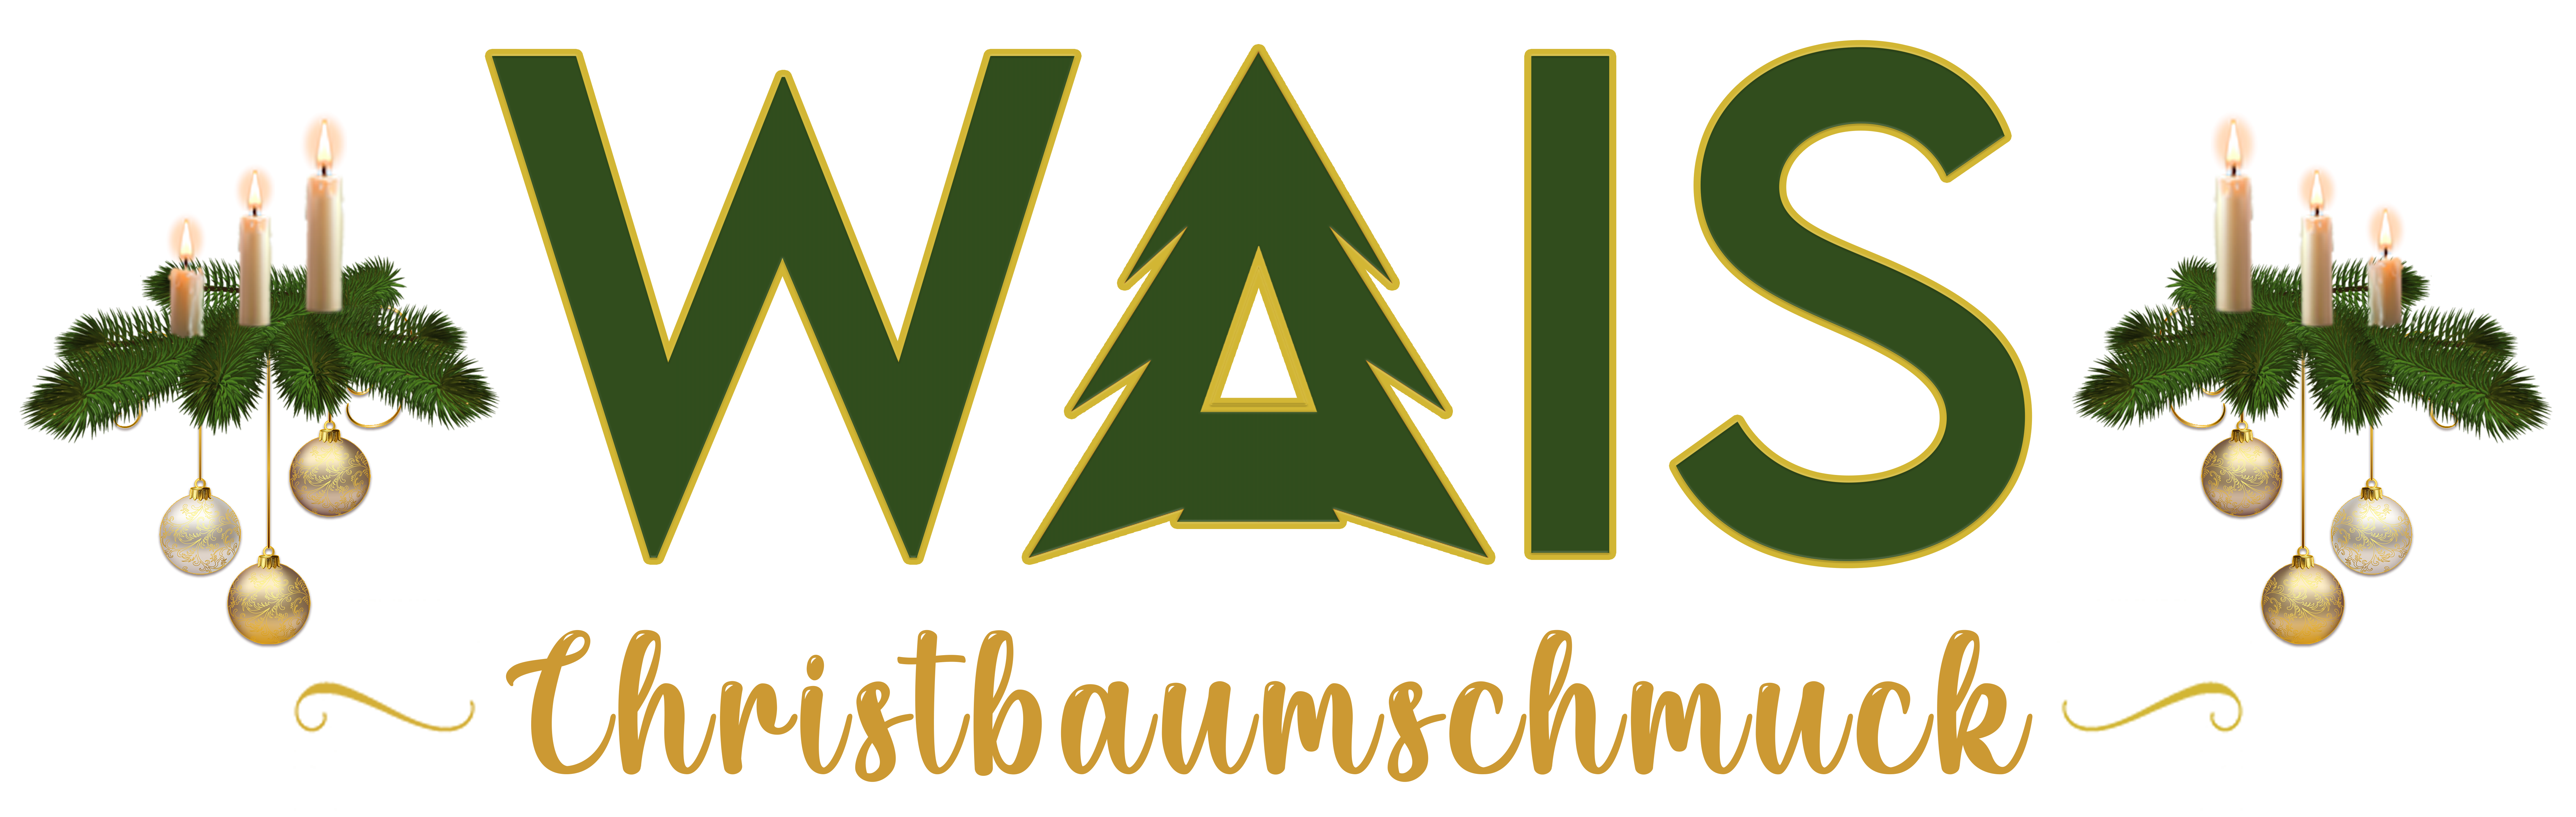 Christbaumschmuck Wais